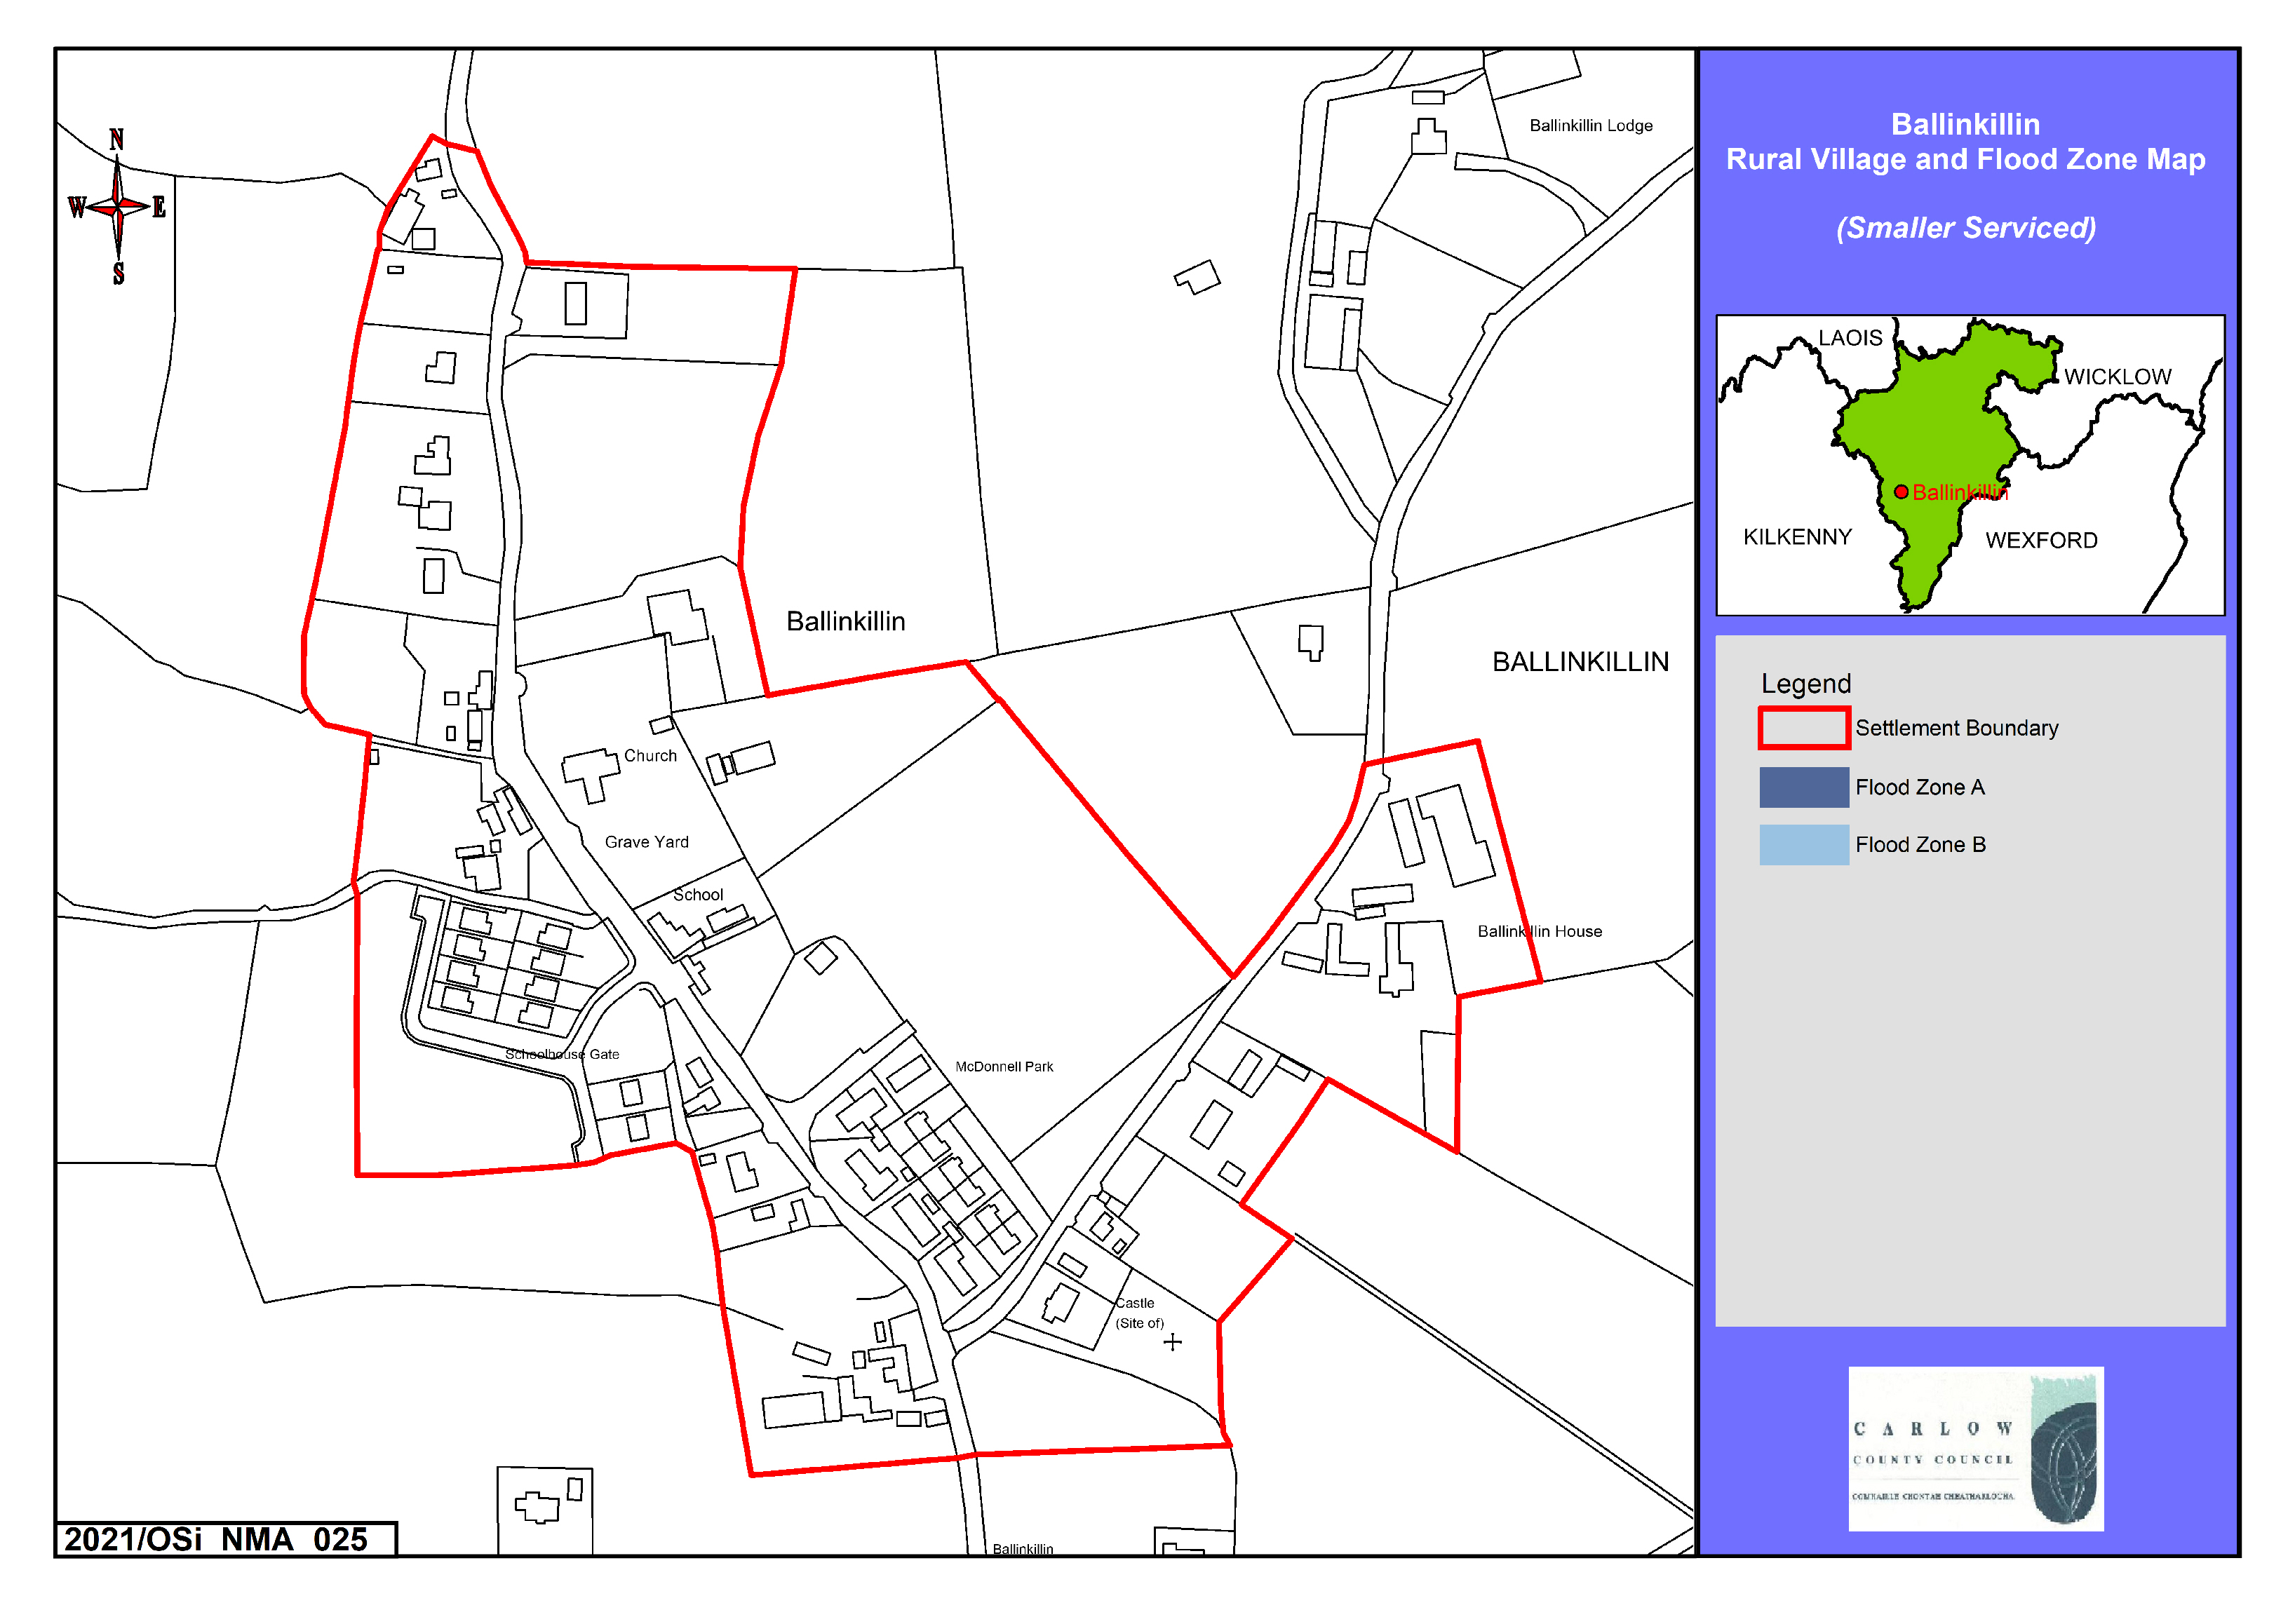 Ballinkillin Rural Village and Flood Zone Map